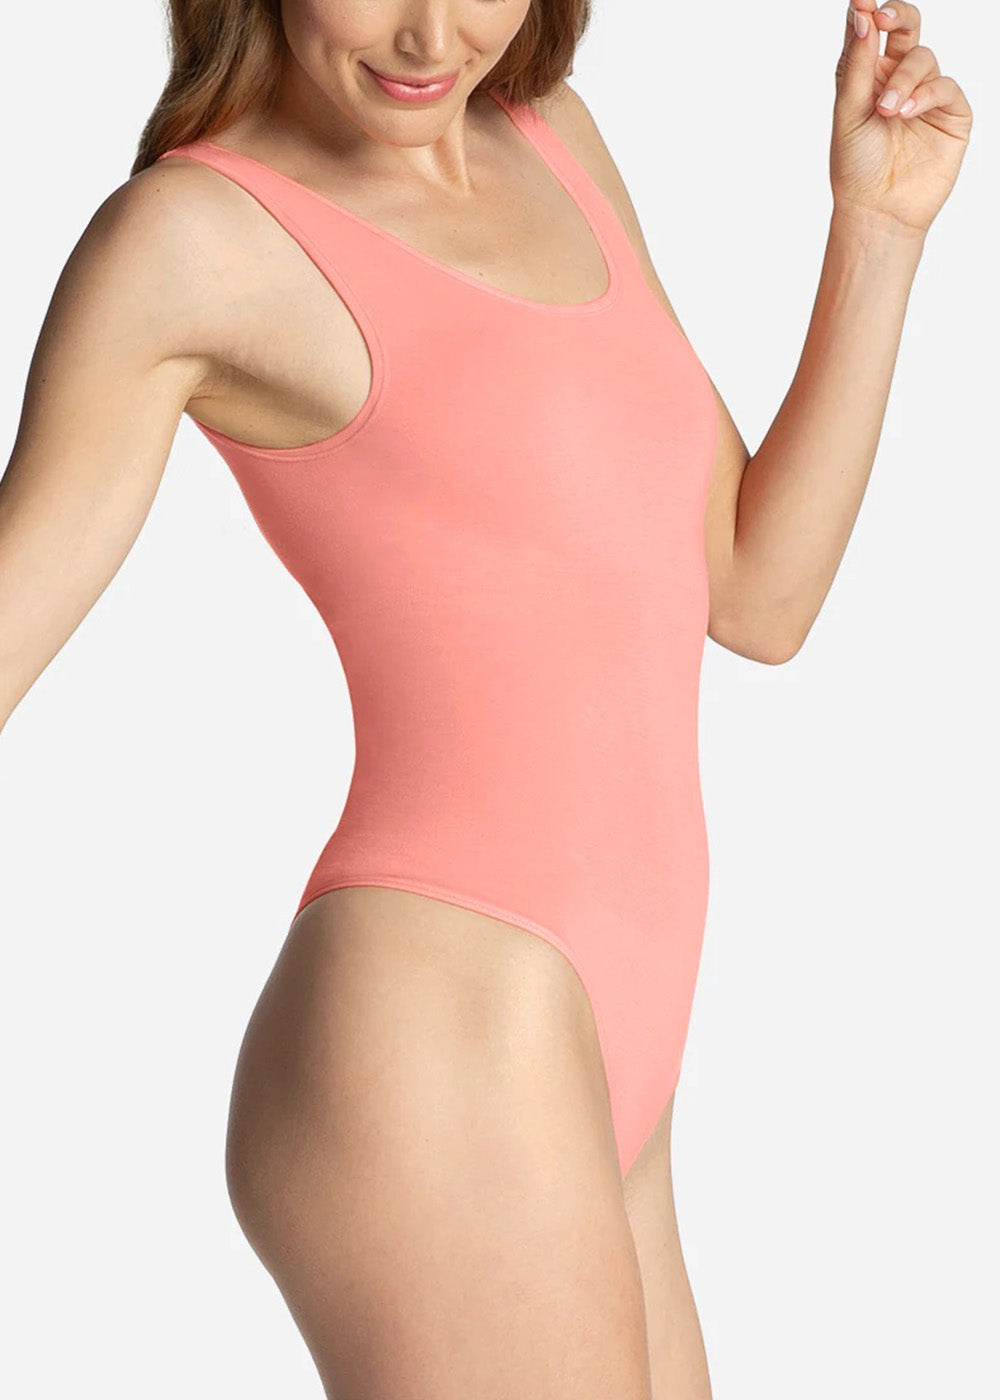 Smoothing Thong Bodysuit - Powder pink - Ladies